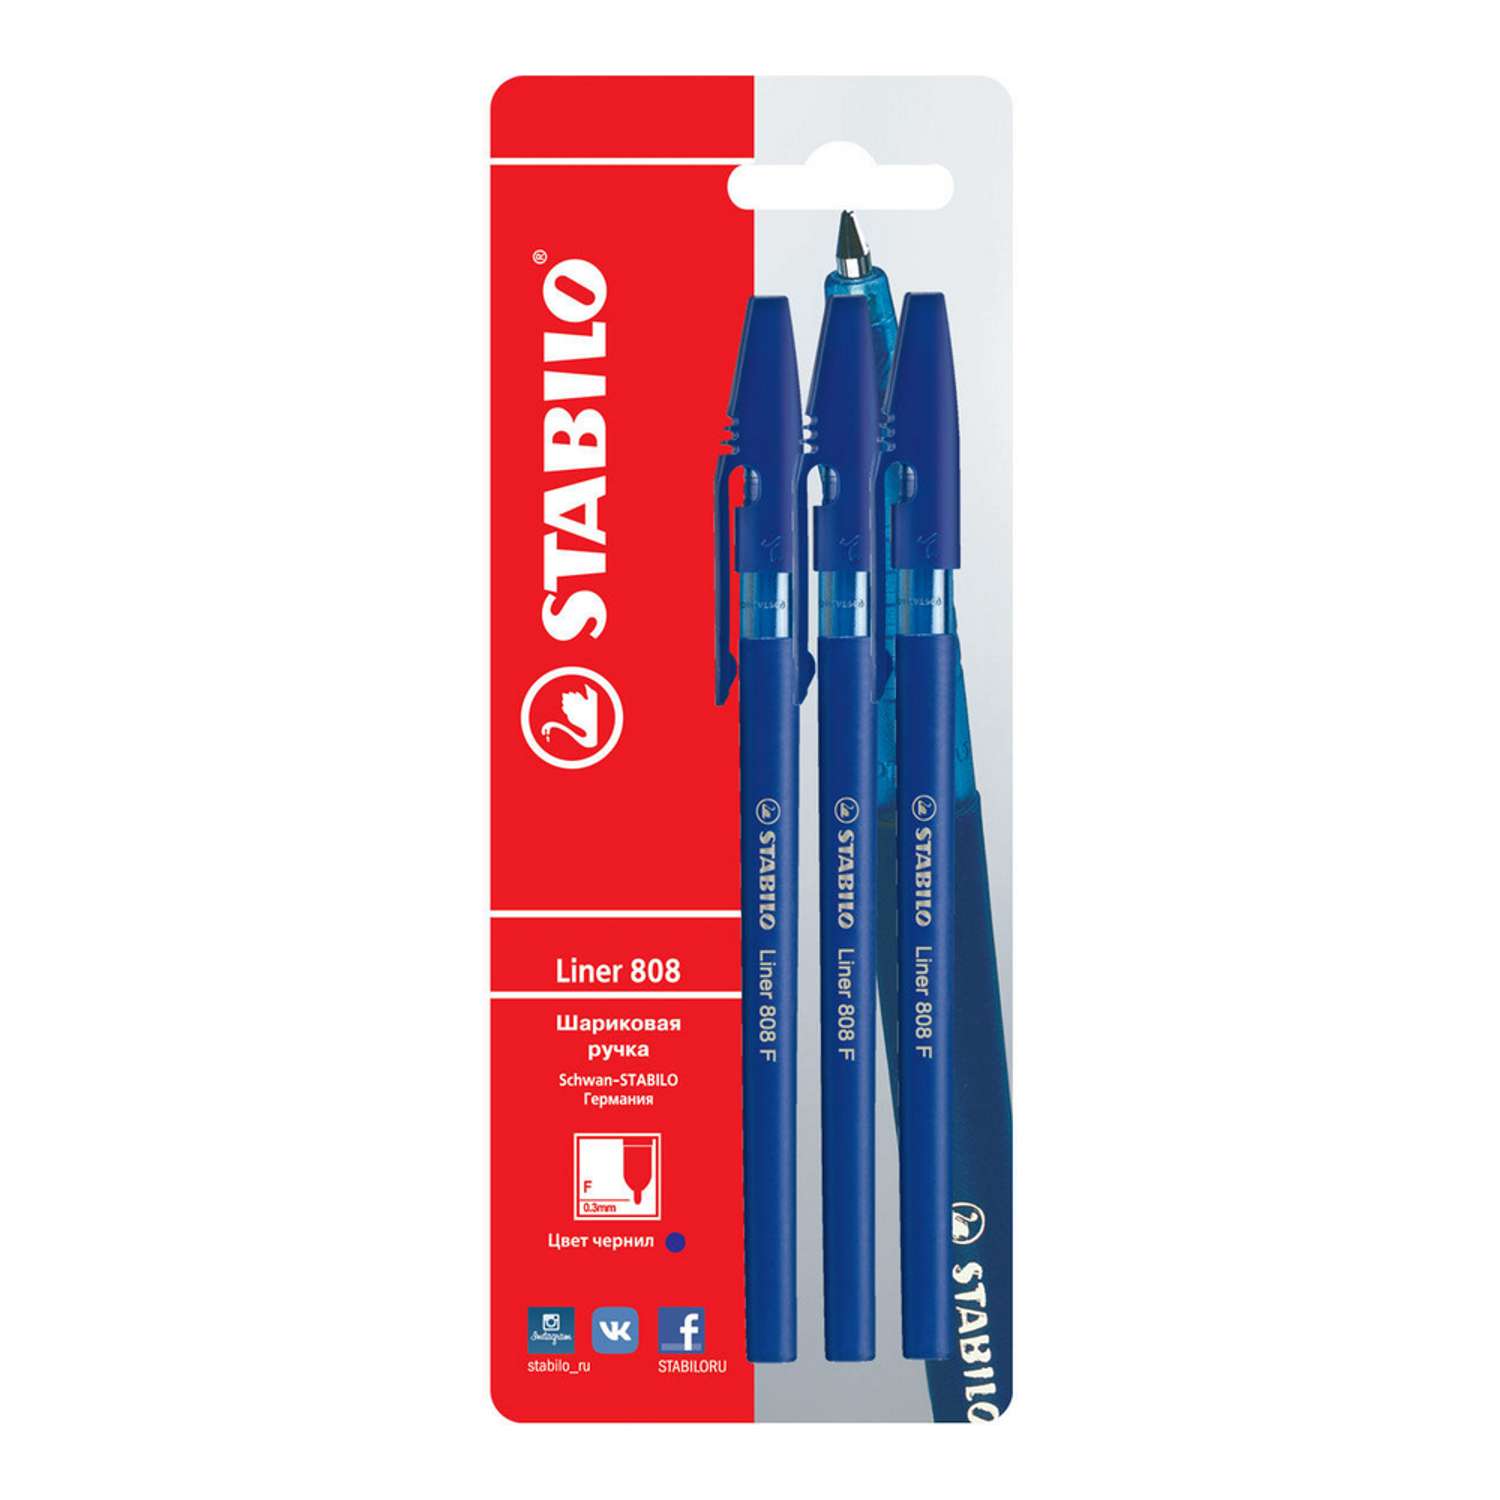 Ручка шариковая STABILO liner 808 3 шт линия 0.38мм синие масляные чернила 808/41-3B - фото 2